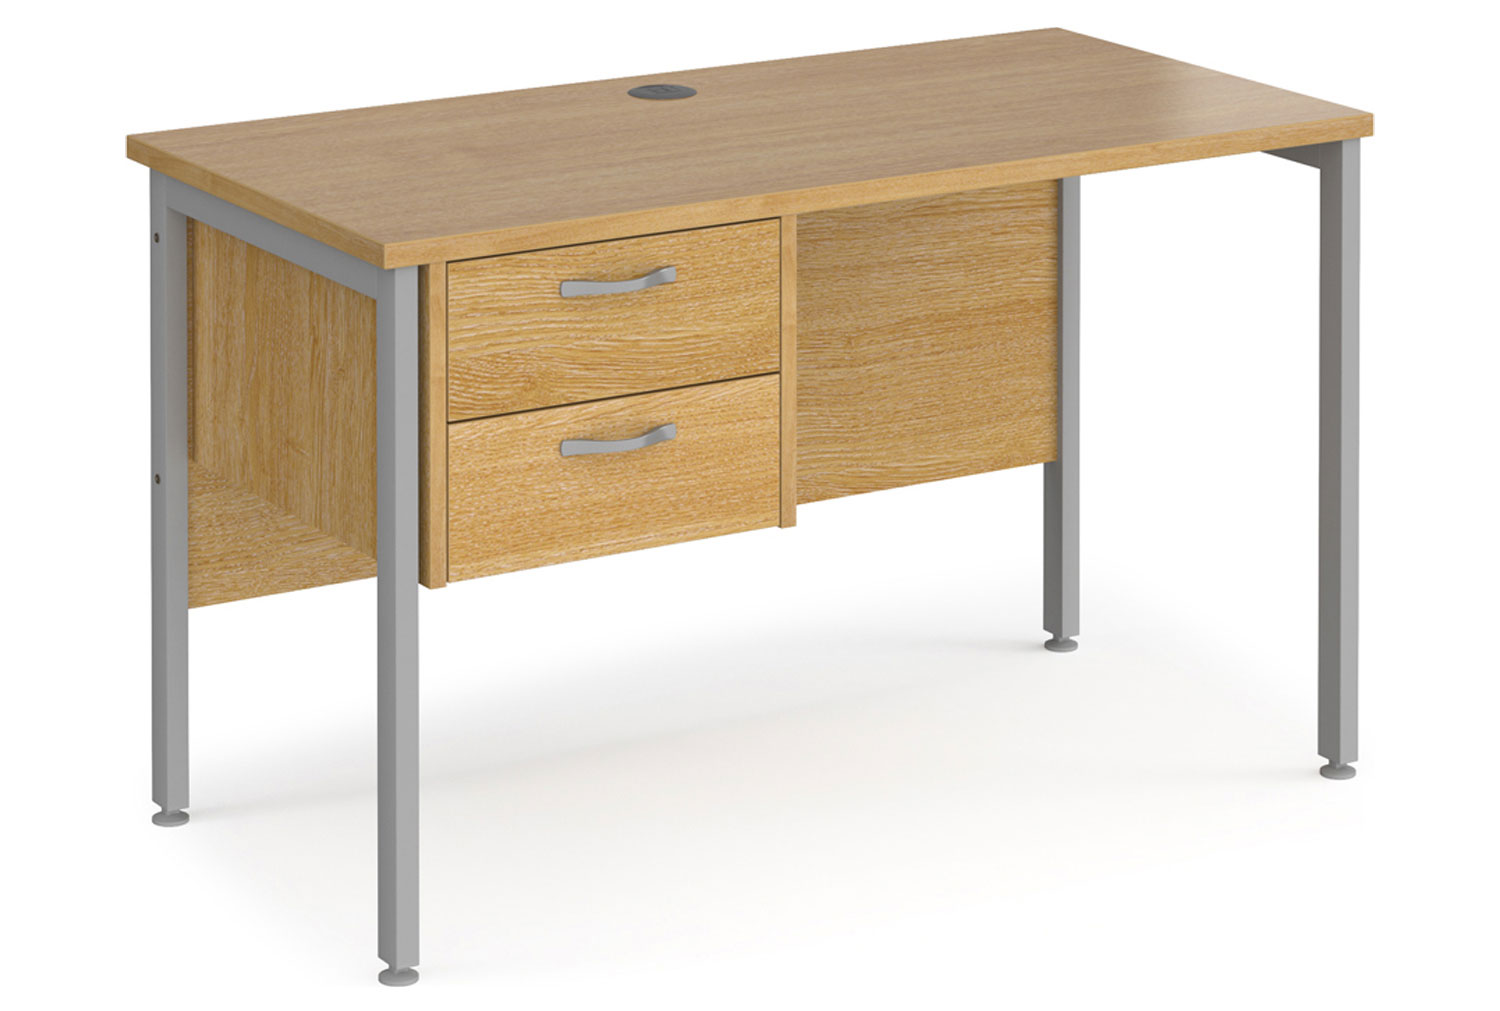 Value Line Deluxe H-Leg Narrow Rectangular Office Desk 2 Drawers (Silver Legs), 120w60dx73h (cm), Oak, Fully Installed